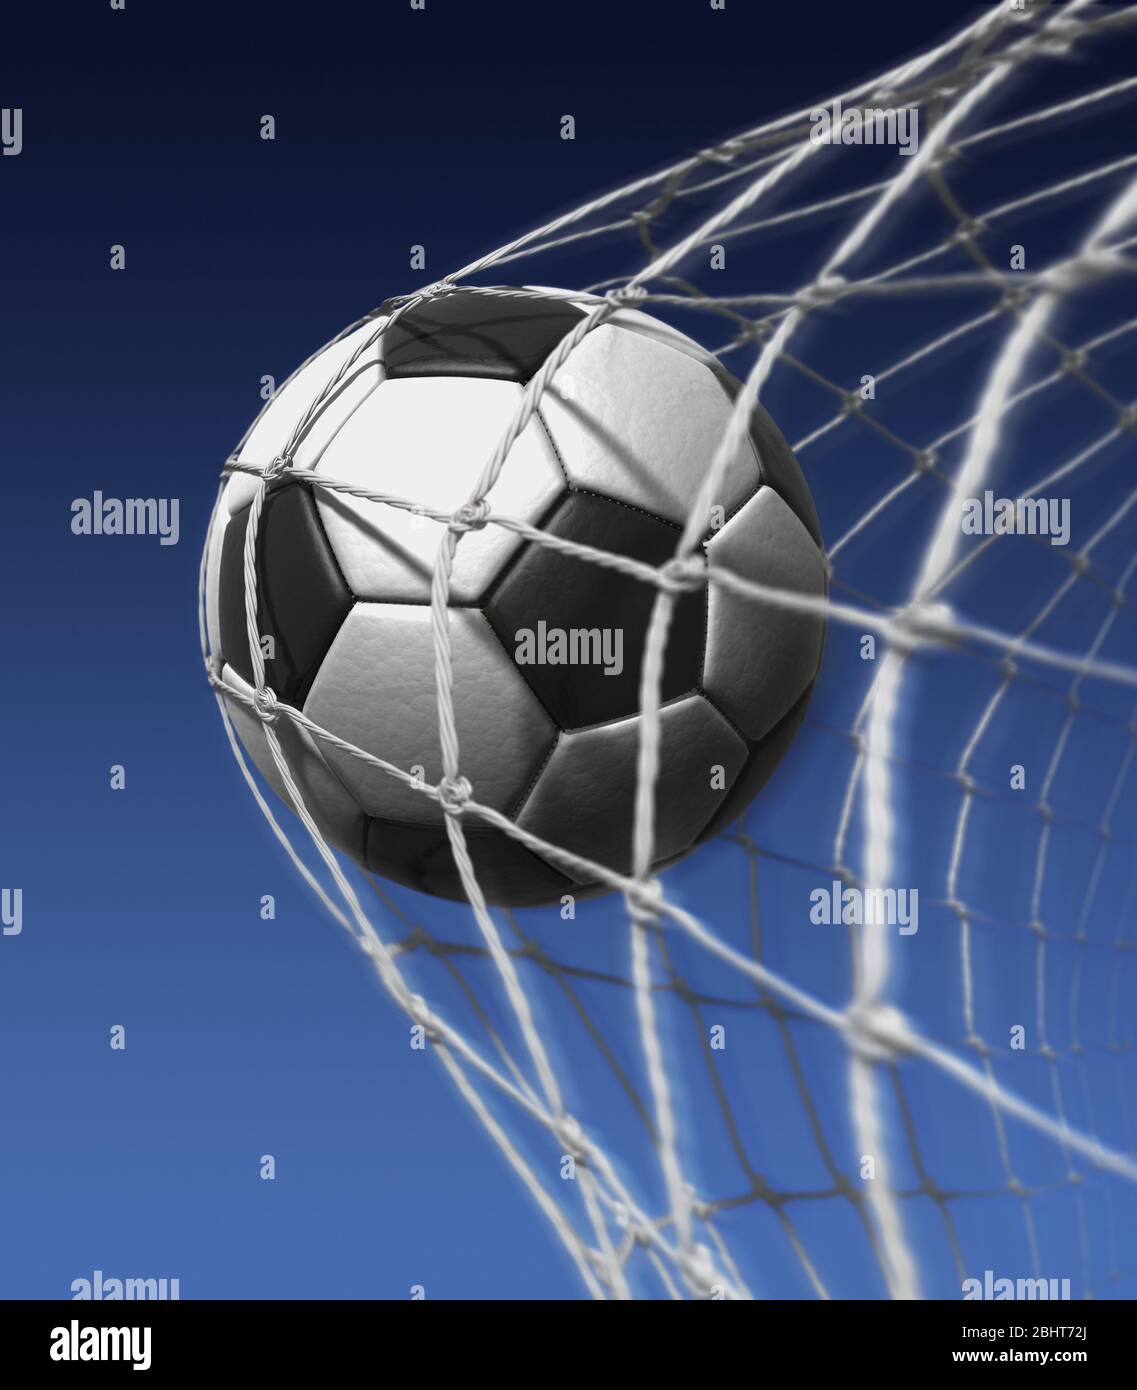 Ziel. Fußball im hinteren Teil des Netzes. Gewinnen, Fußball. Erfolgreich. Schwarz-Weiß-Fußball, Stockfoto